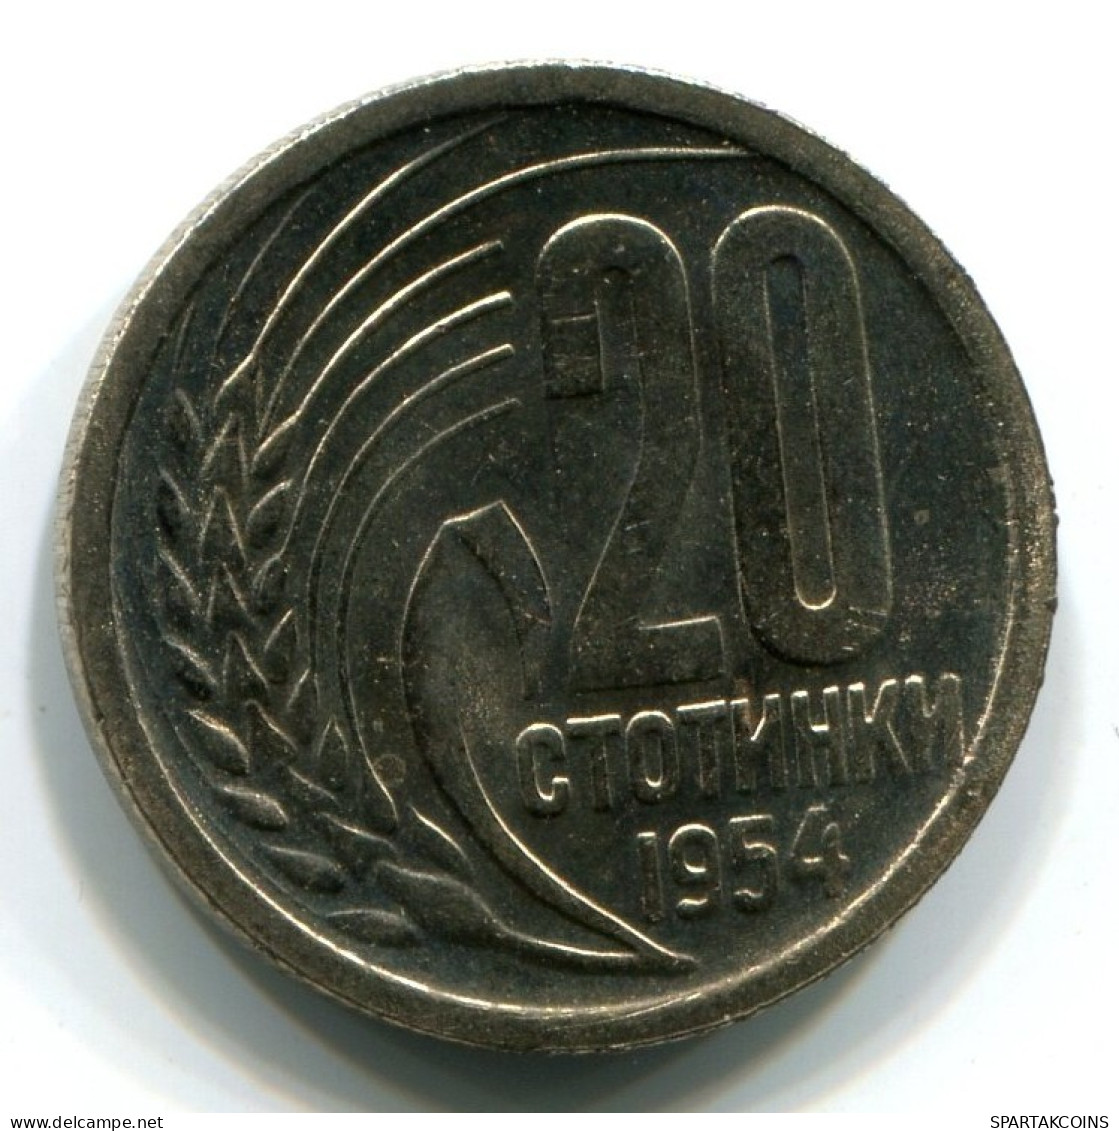 20 STOTINKI 1954 BULGARIA Moneda UNC #W11274.E.A - Bulgaria